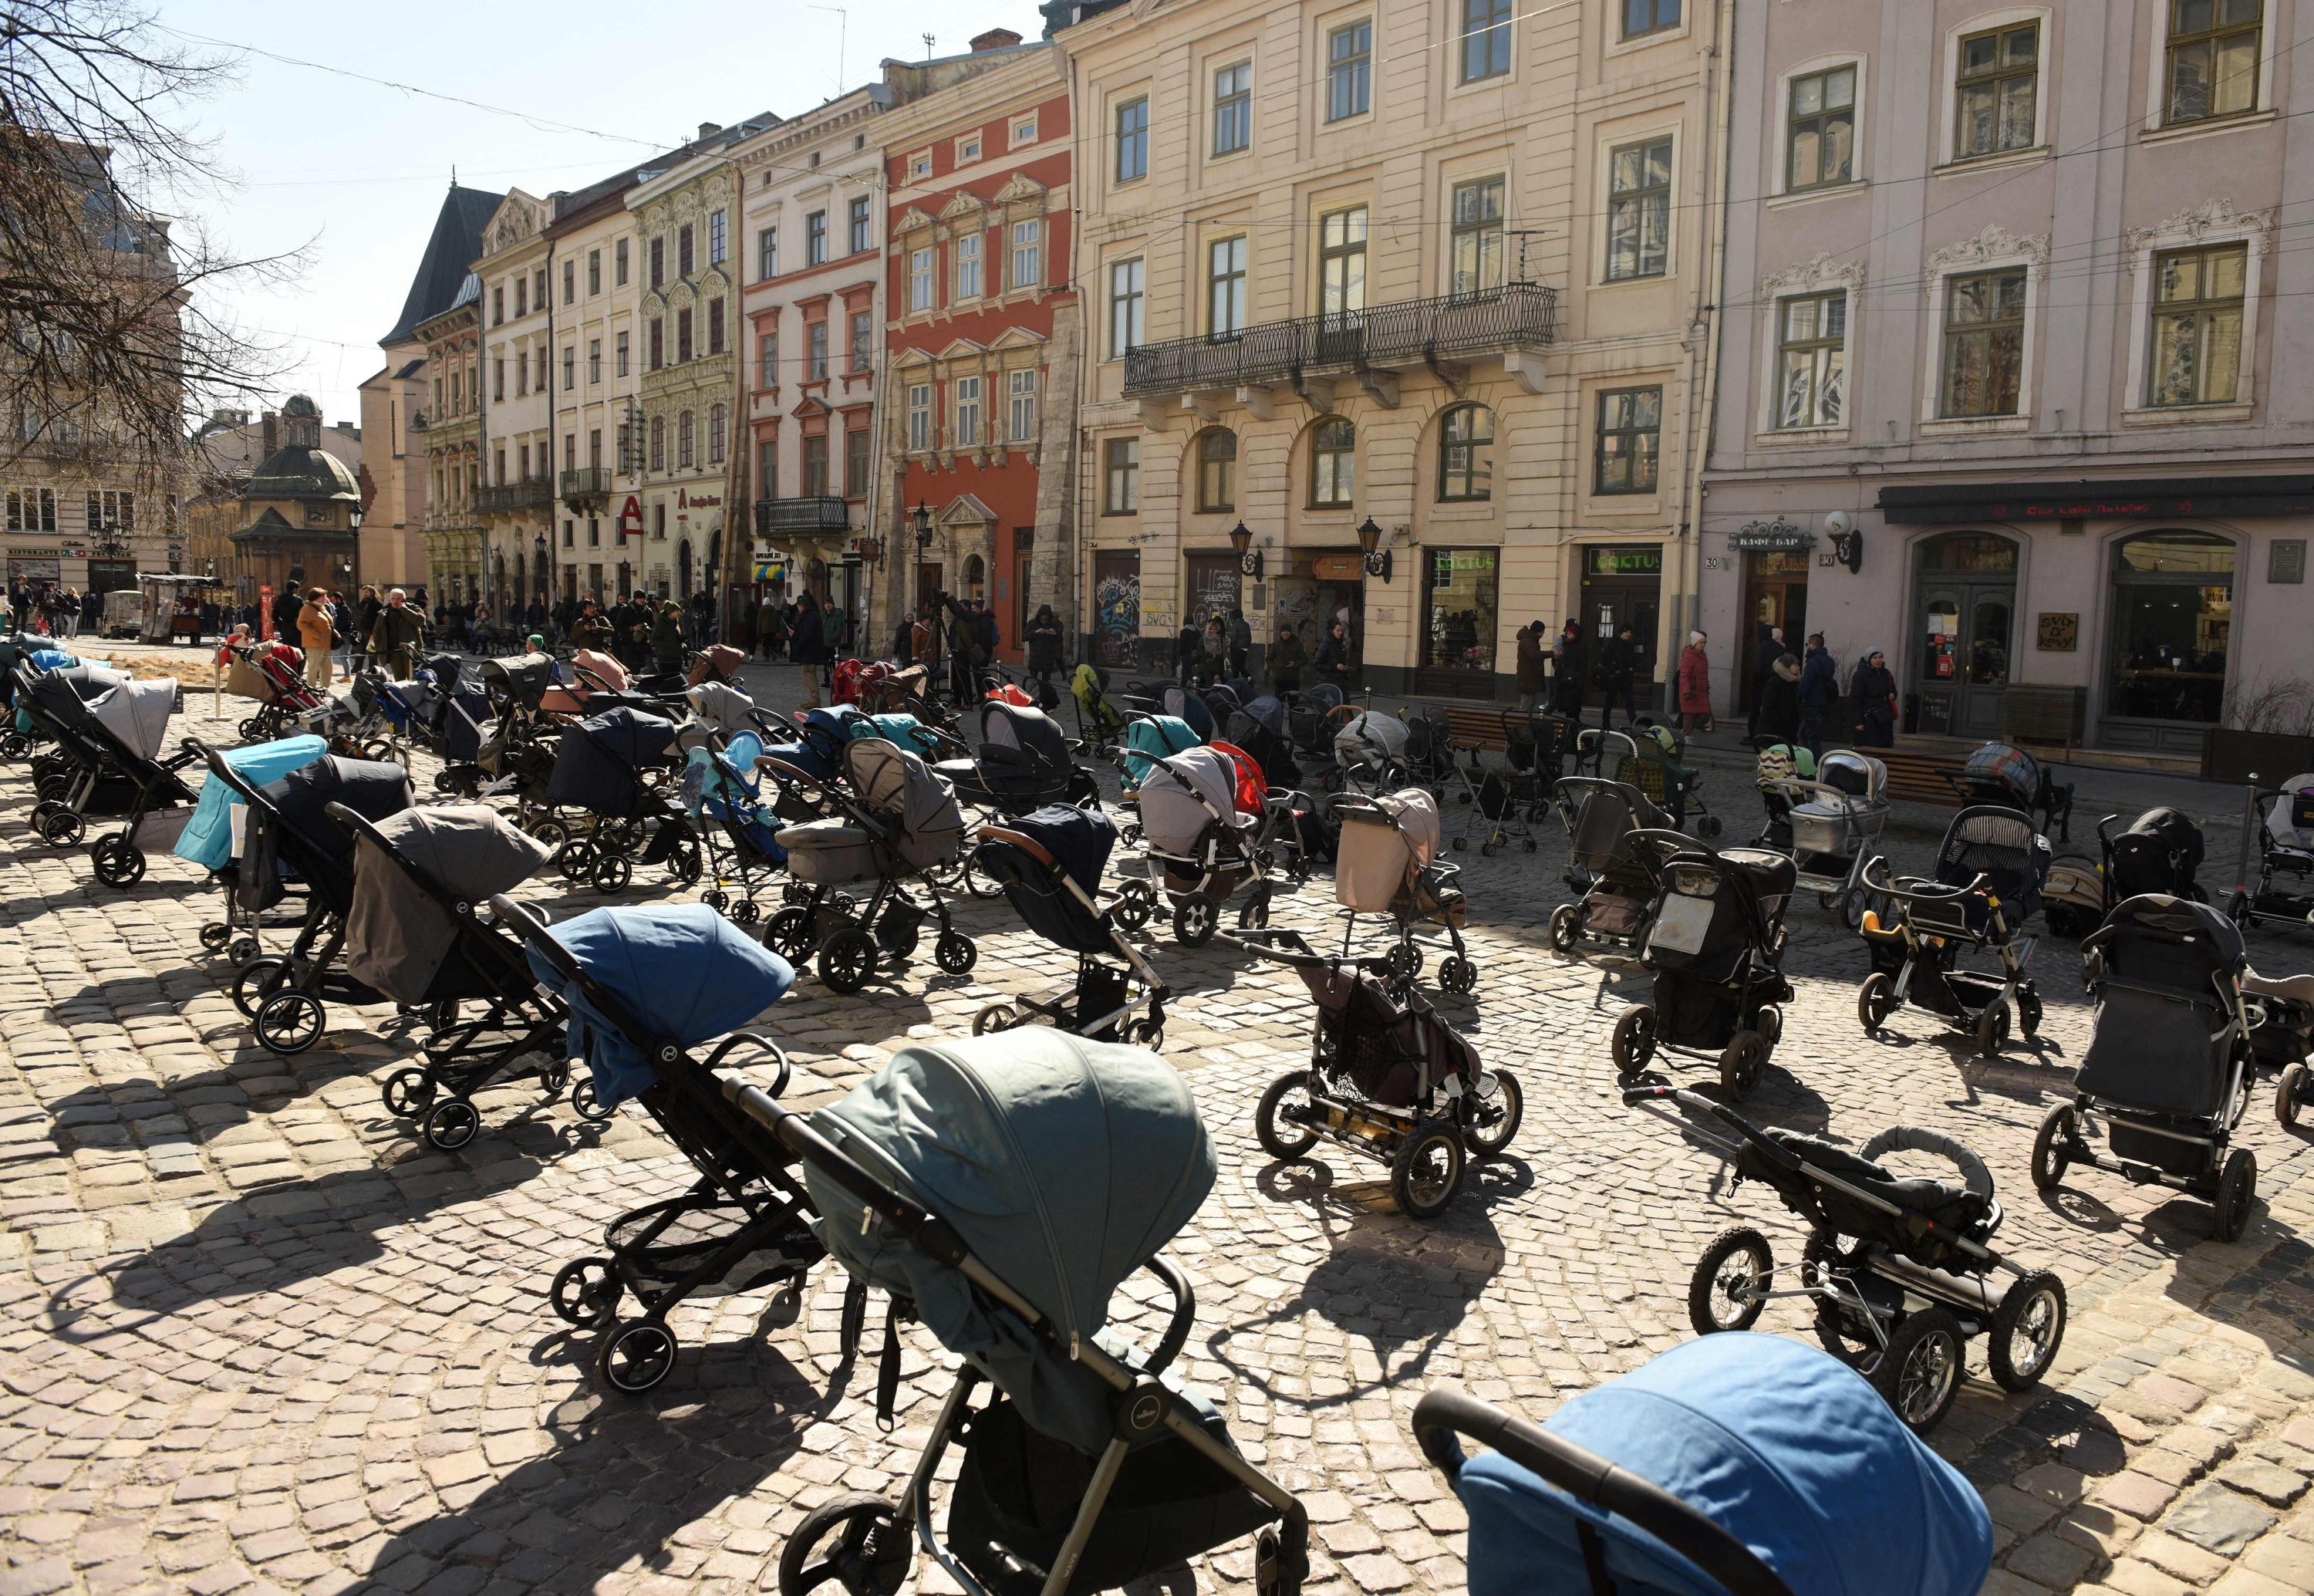 Lebih dari 100 kereta bayi terlihat ditempatkan di luar dewan kota Lviv untuk menyoroti jumlah anak yang tewas dalam invasi Rusia ke Ukraina, Lviv, Ukraina, 18 Maret 2022, (AFP Photo)